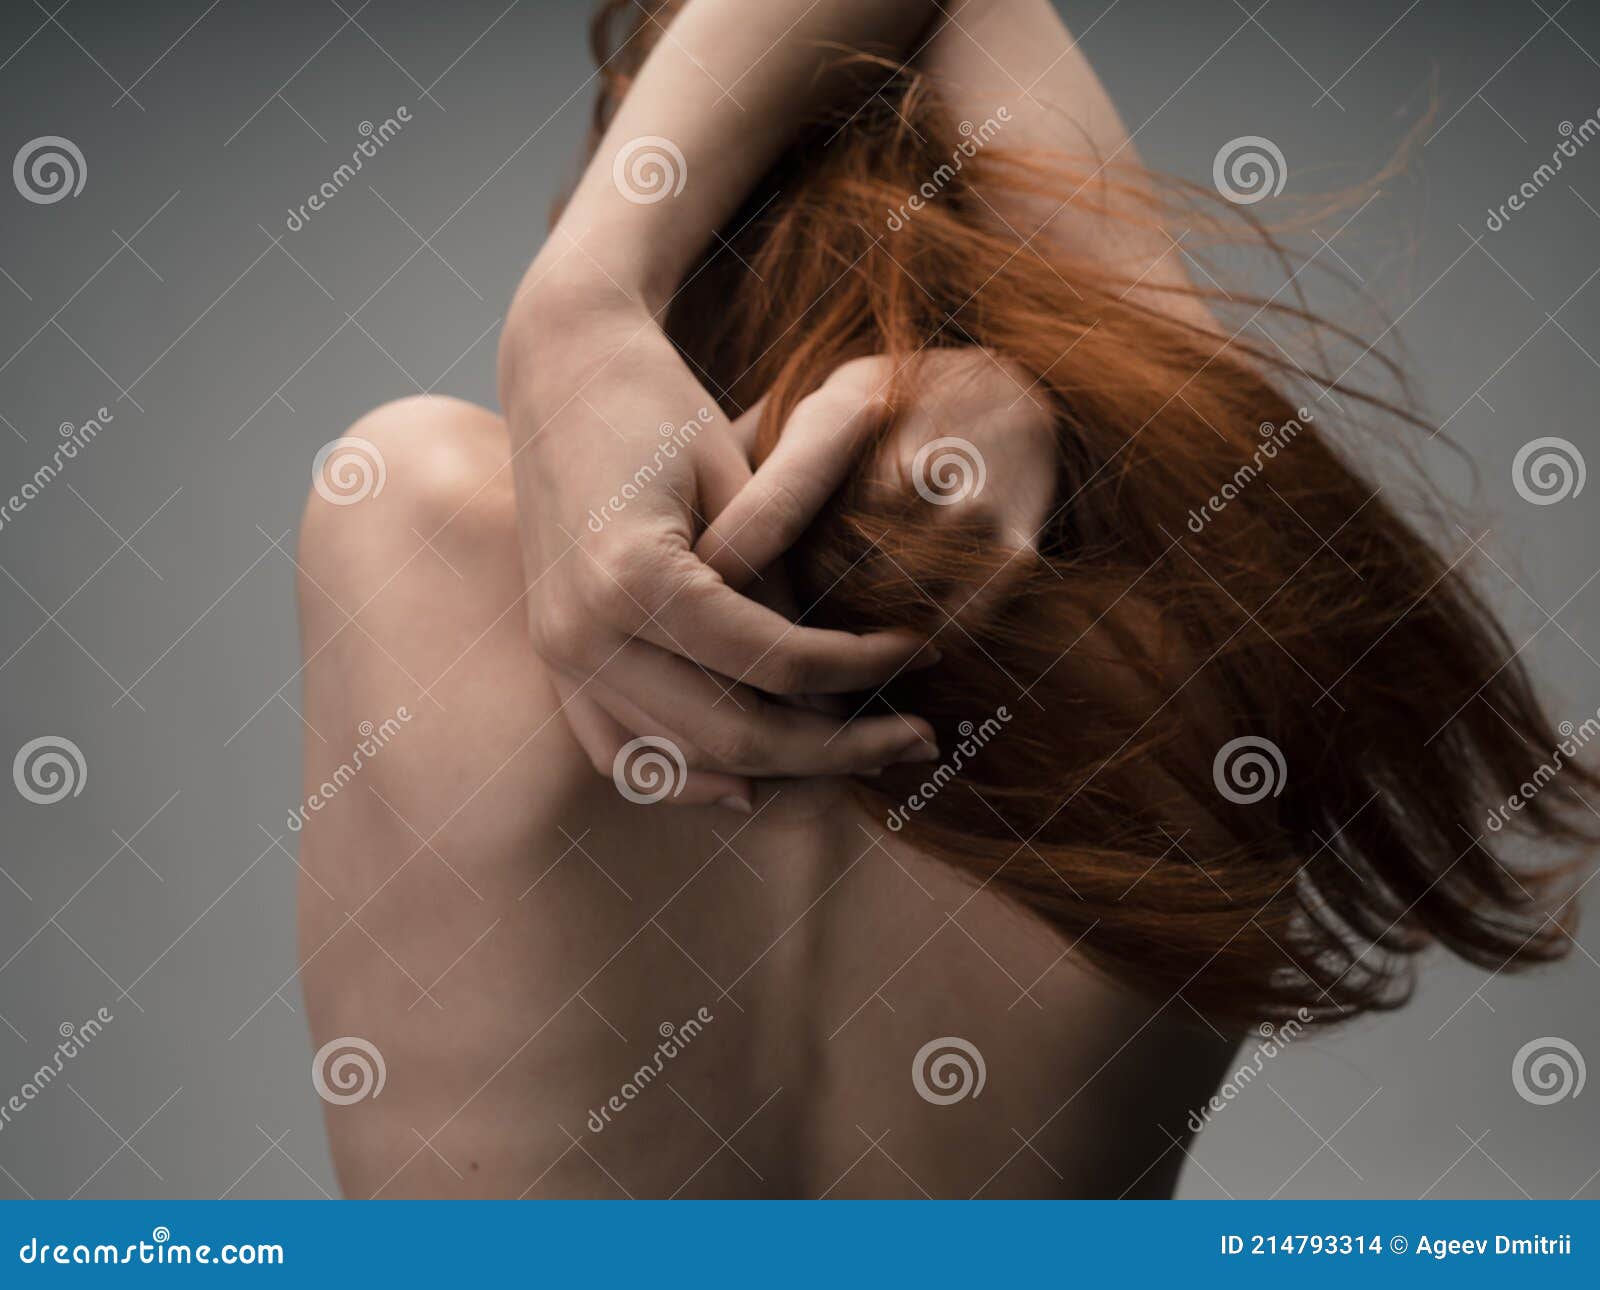 Woman Touching Herself